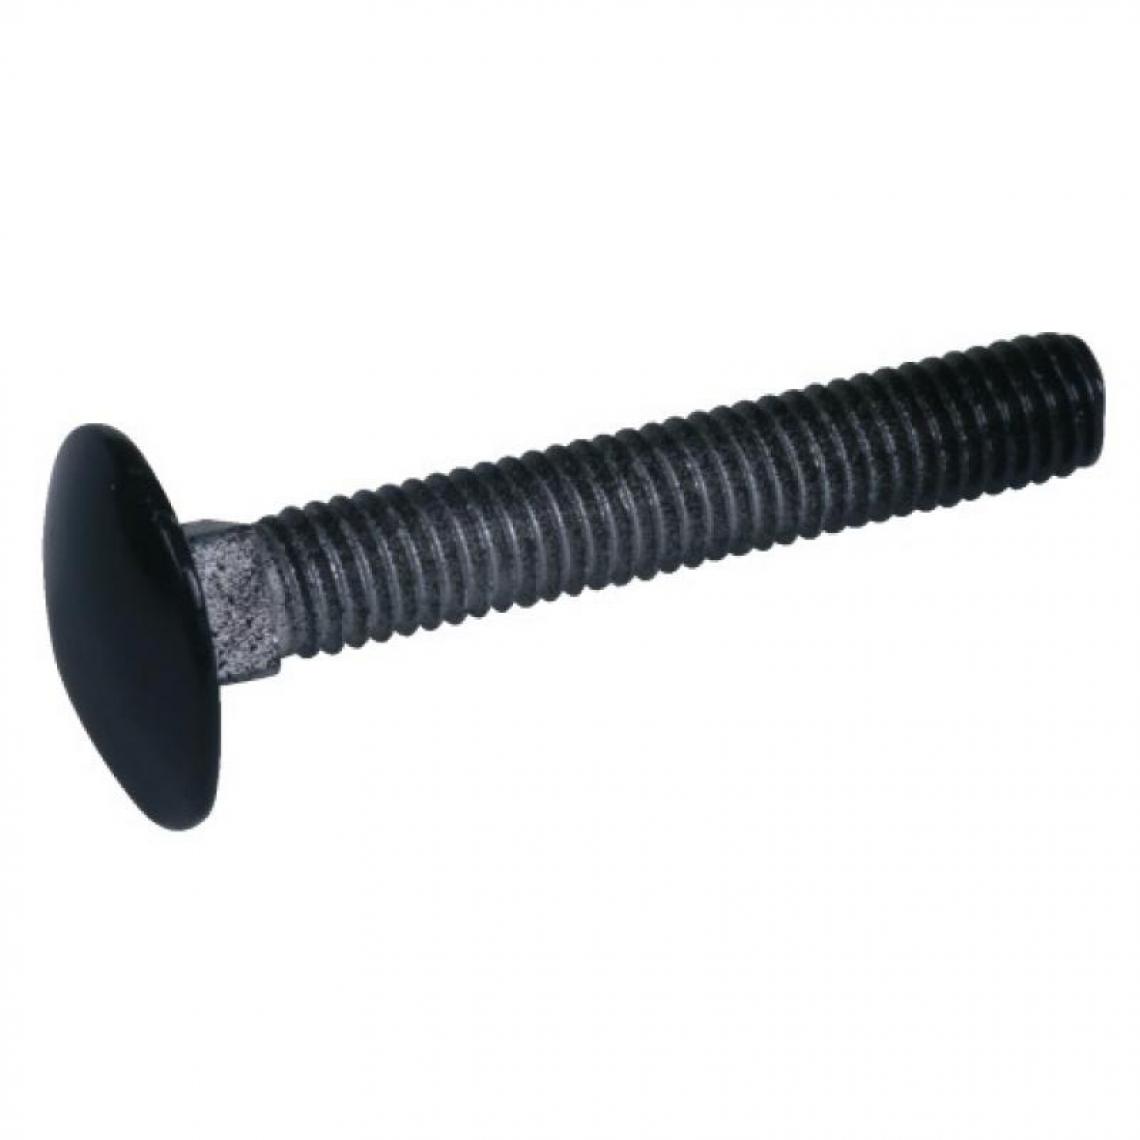 Torbel Industrie - Boulons tête ronde collet carré 6 x 60 mm finition noir pour volets aluminium et PVC boîte de - Charnière de fenetre